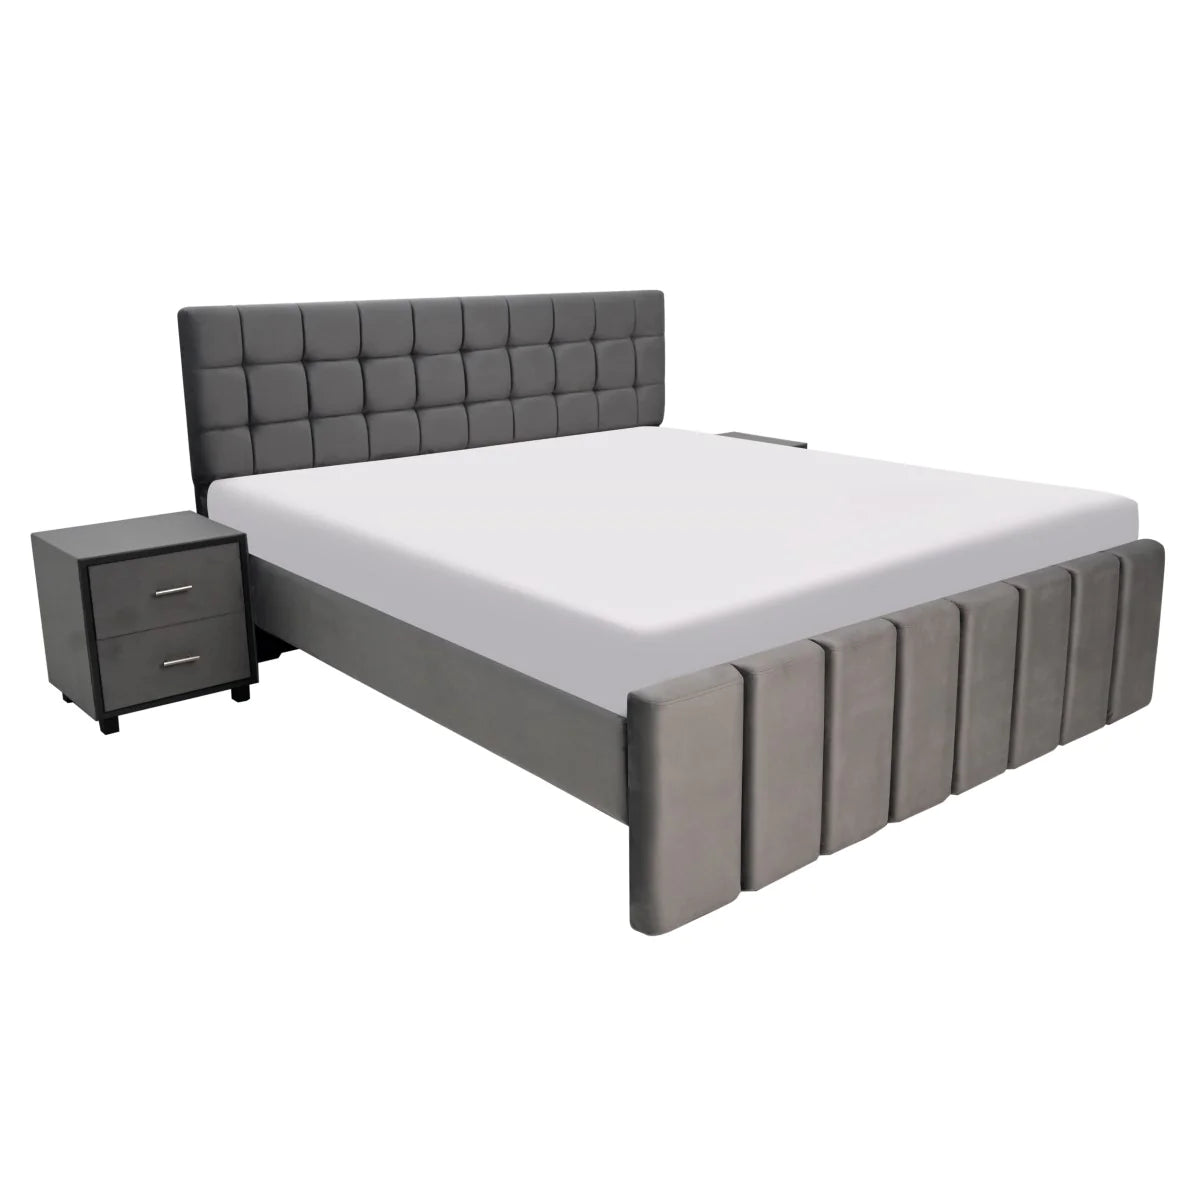 Nimoy - Bed & Dresser